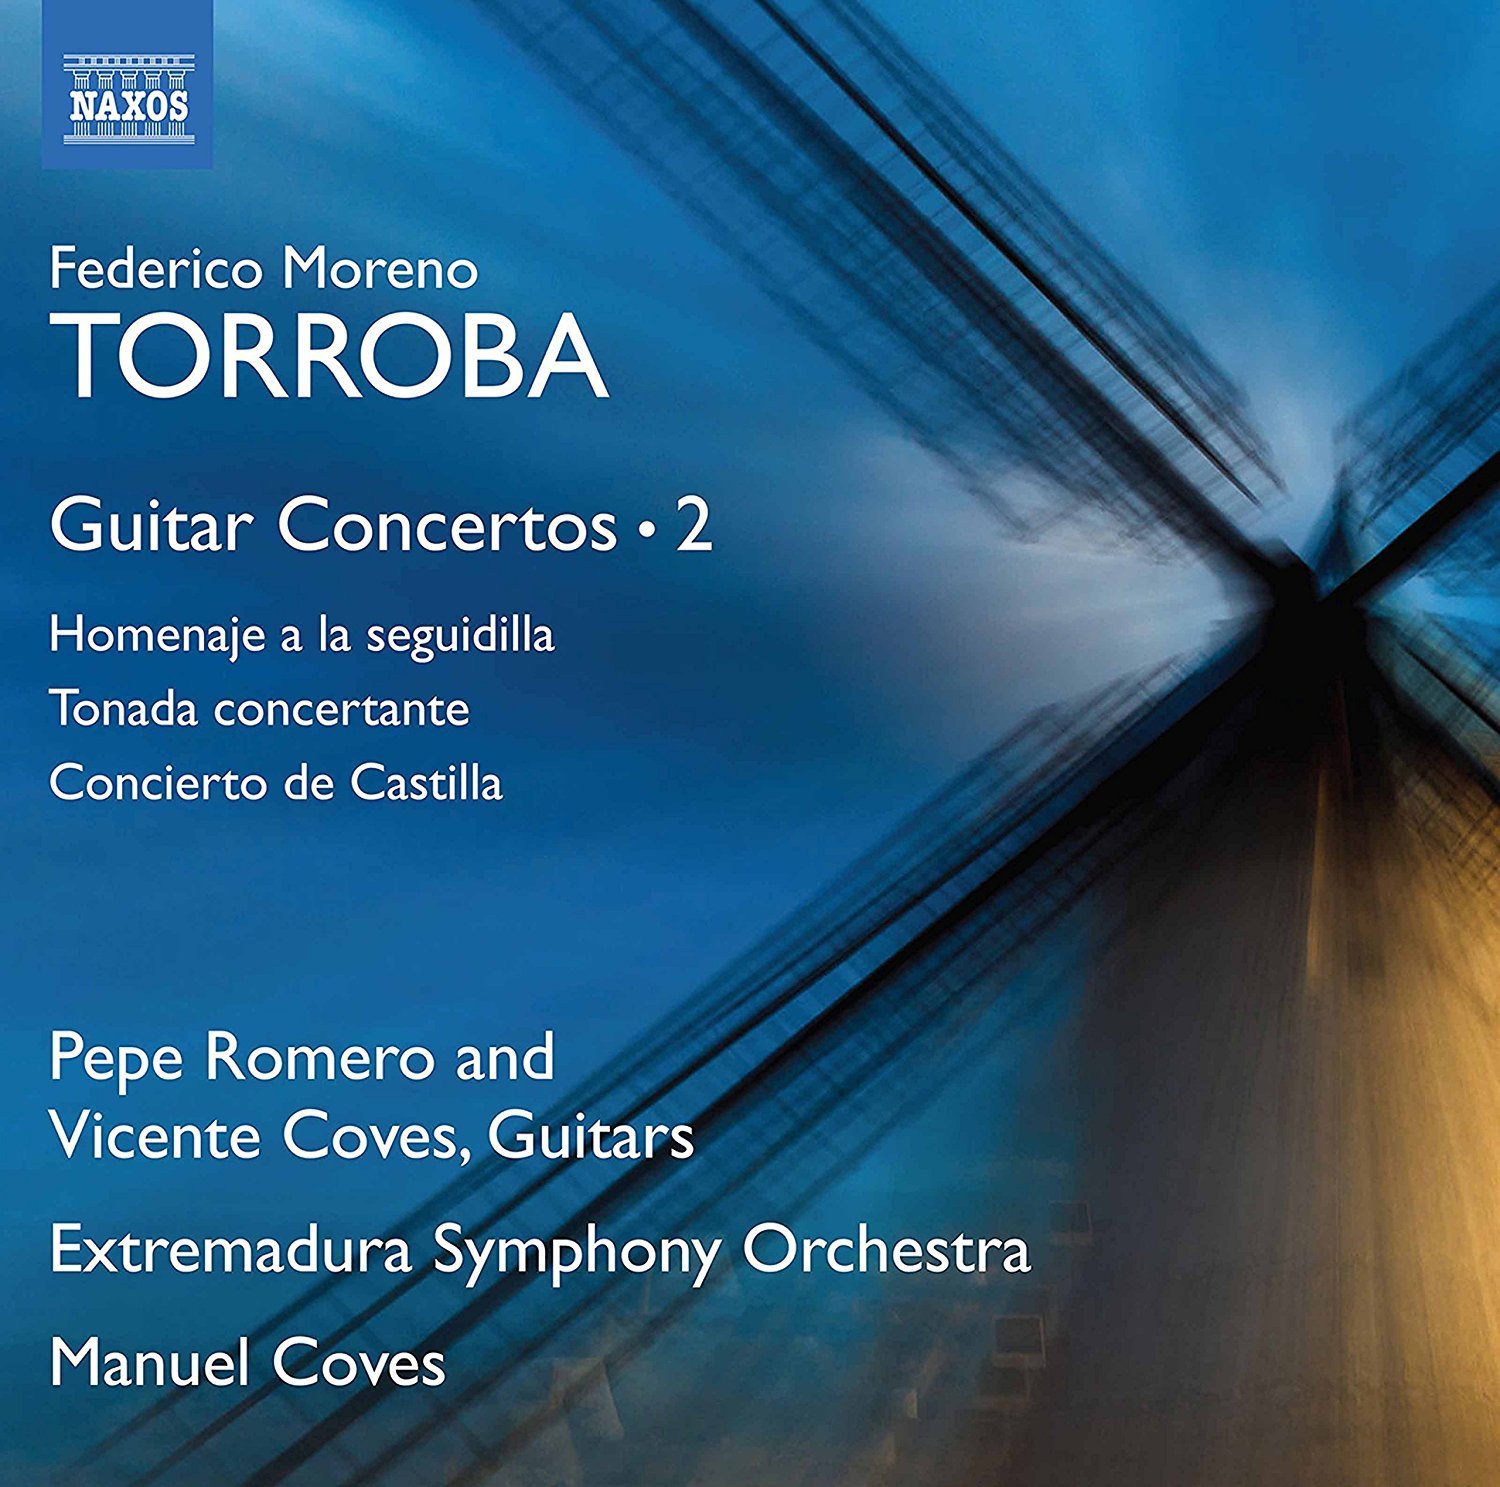 Guitar Concertos Vol. 2 | Manuel Coves, Pepe Romero, Vincent Coves, Extremadura Symphony Orchestra, Federico Moreno